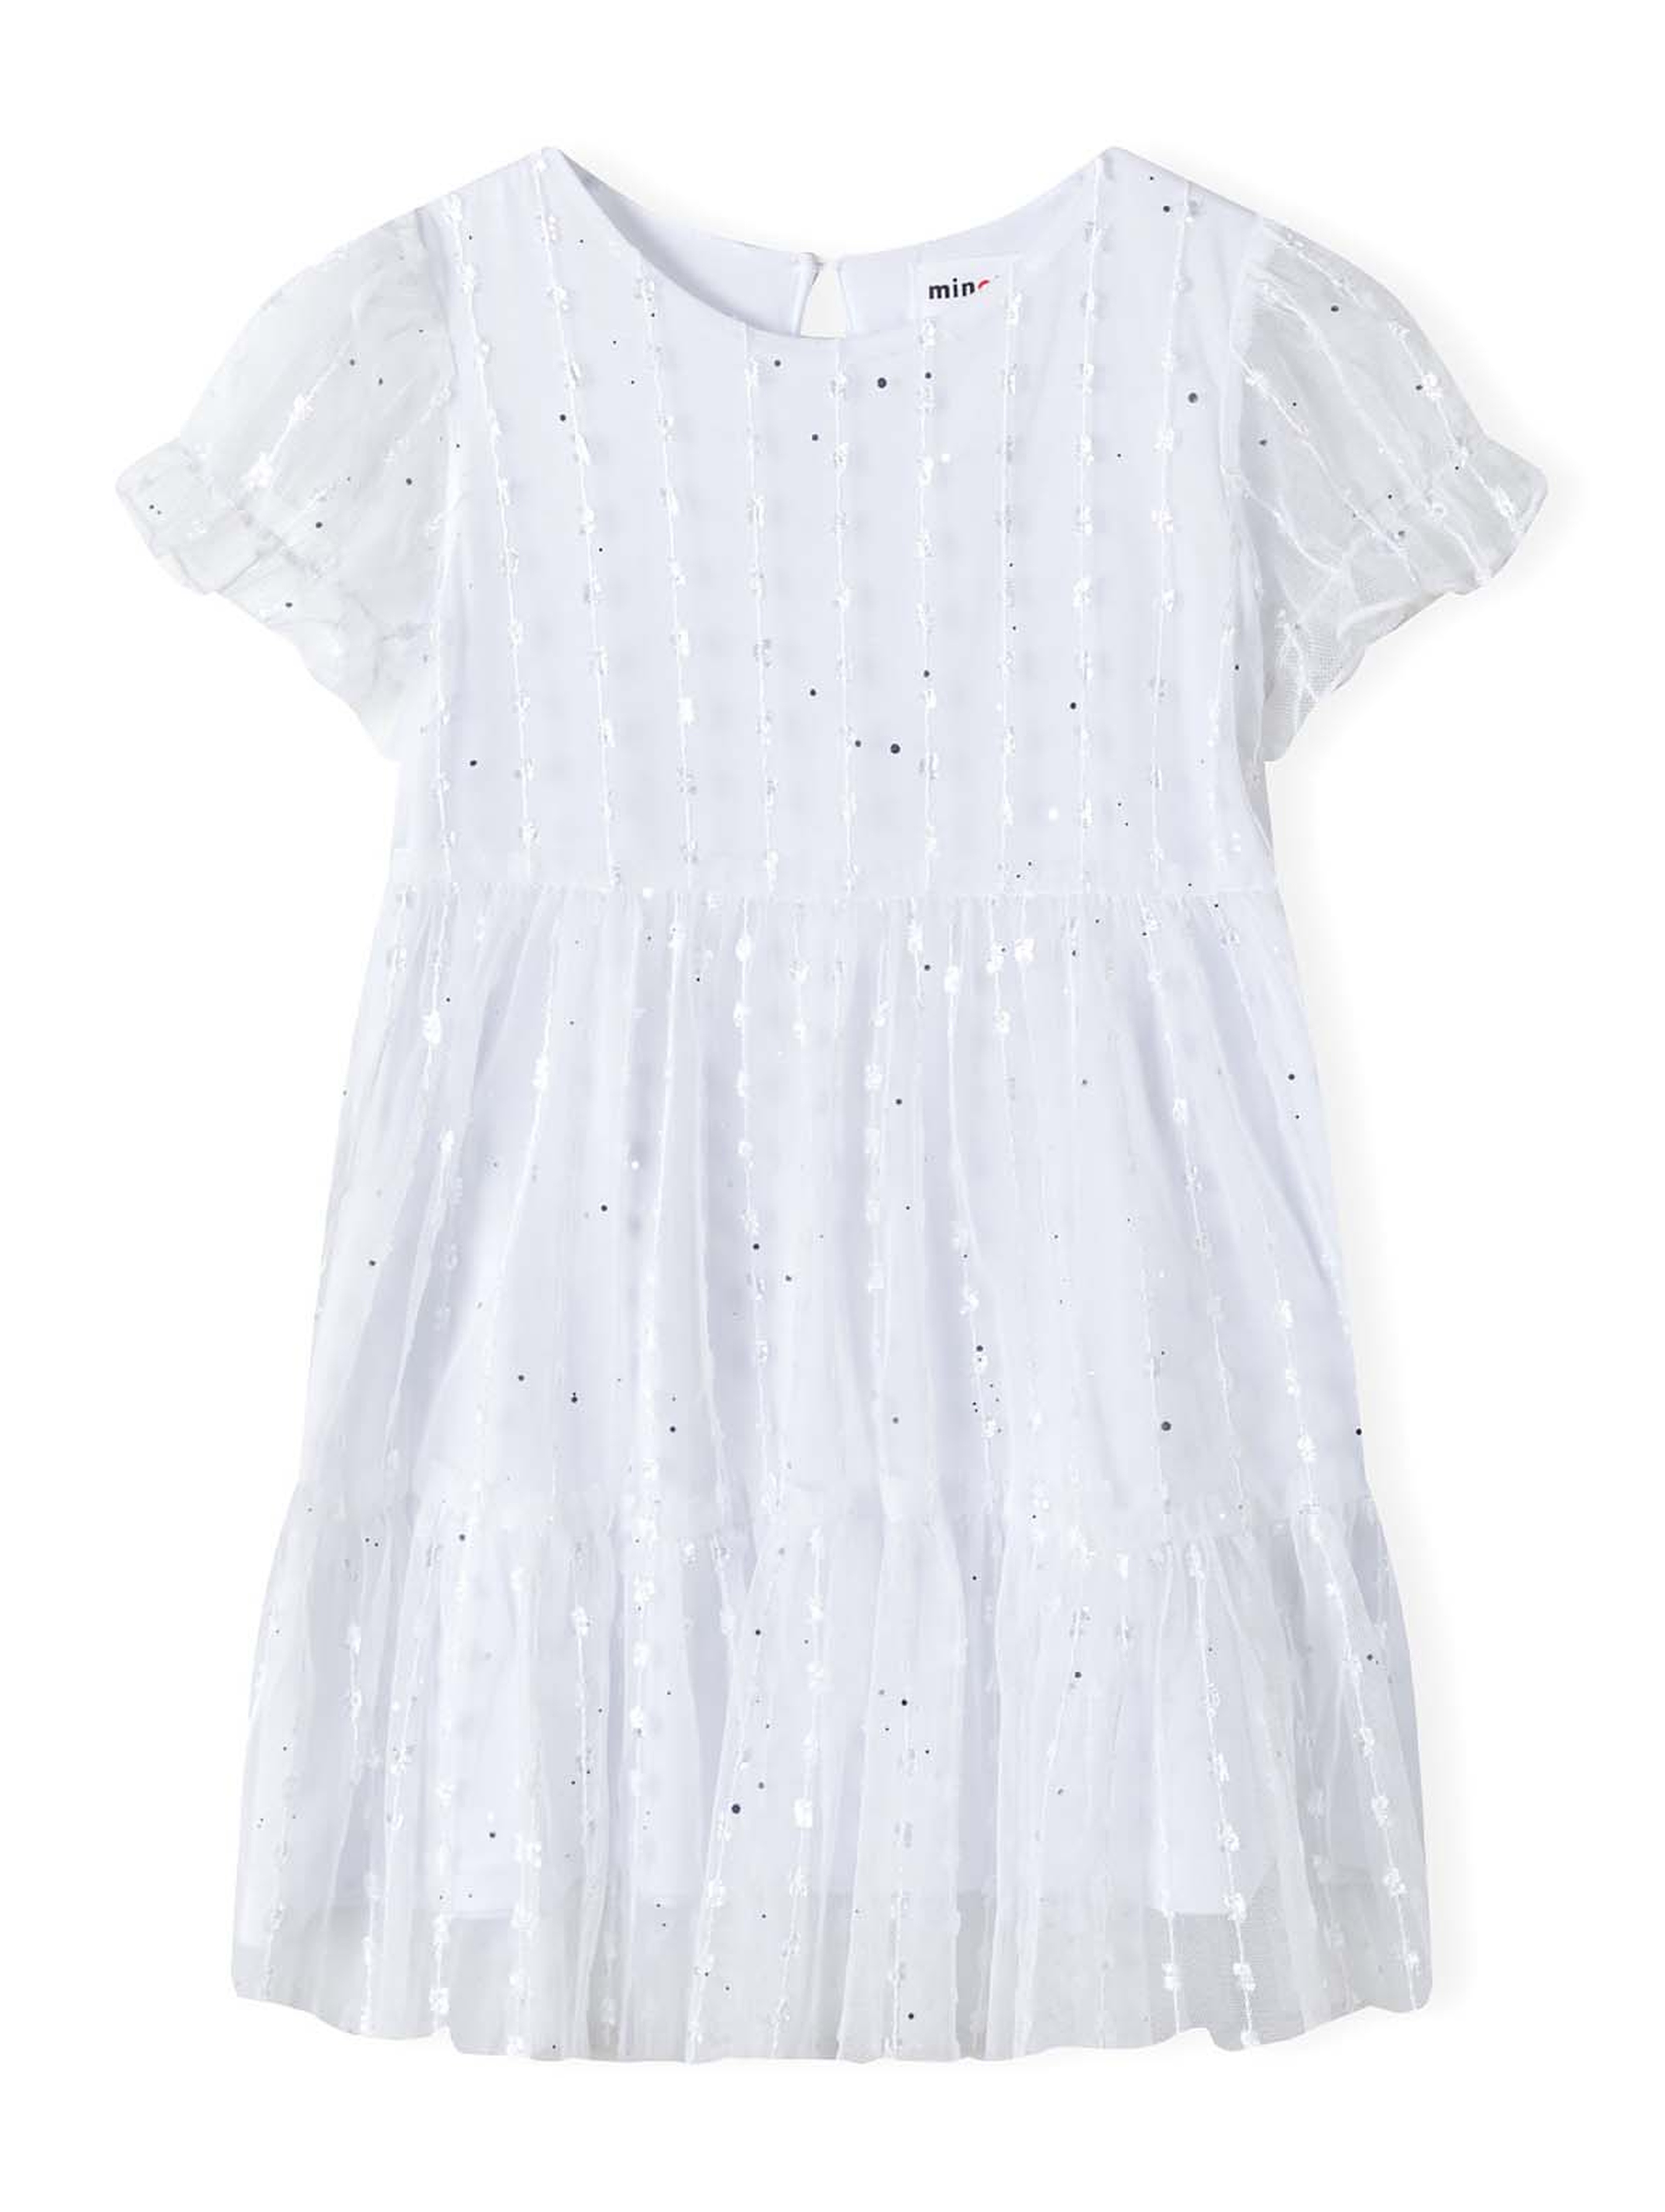 Biała tiulowa sukienka dziewczęca z błyszczącymi elementami